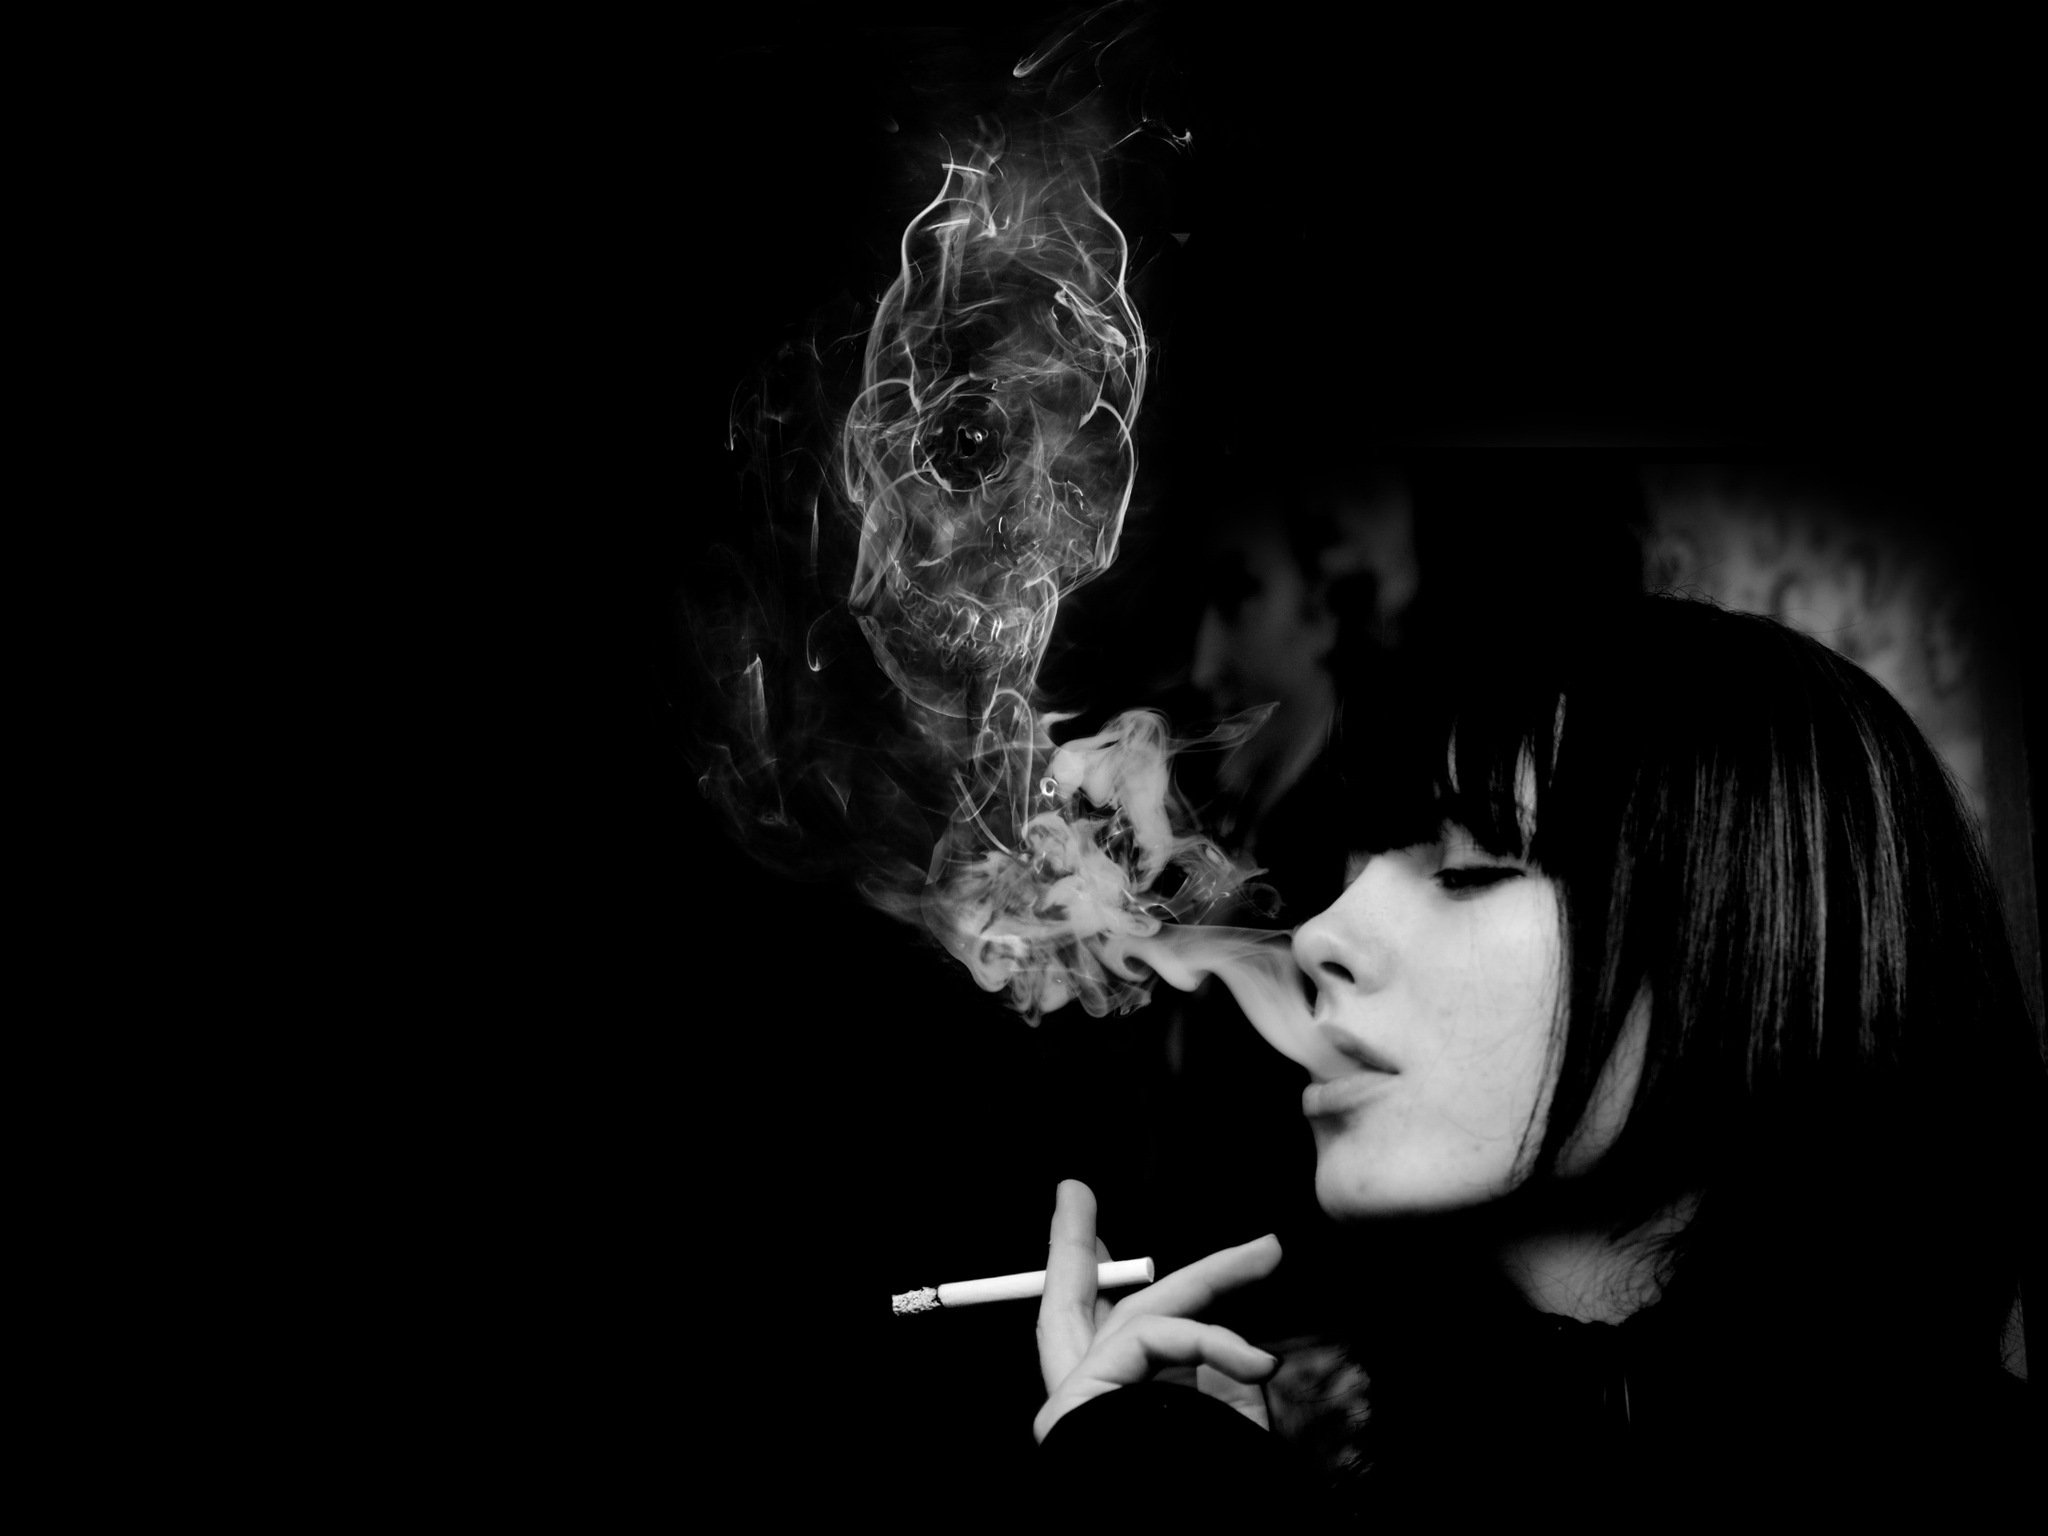 rauchende schädeltapete,schwarz,rauchen,fotografieren,dunkelheit,schwarz und weiß